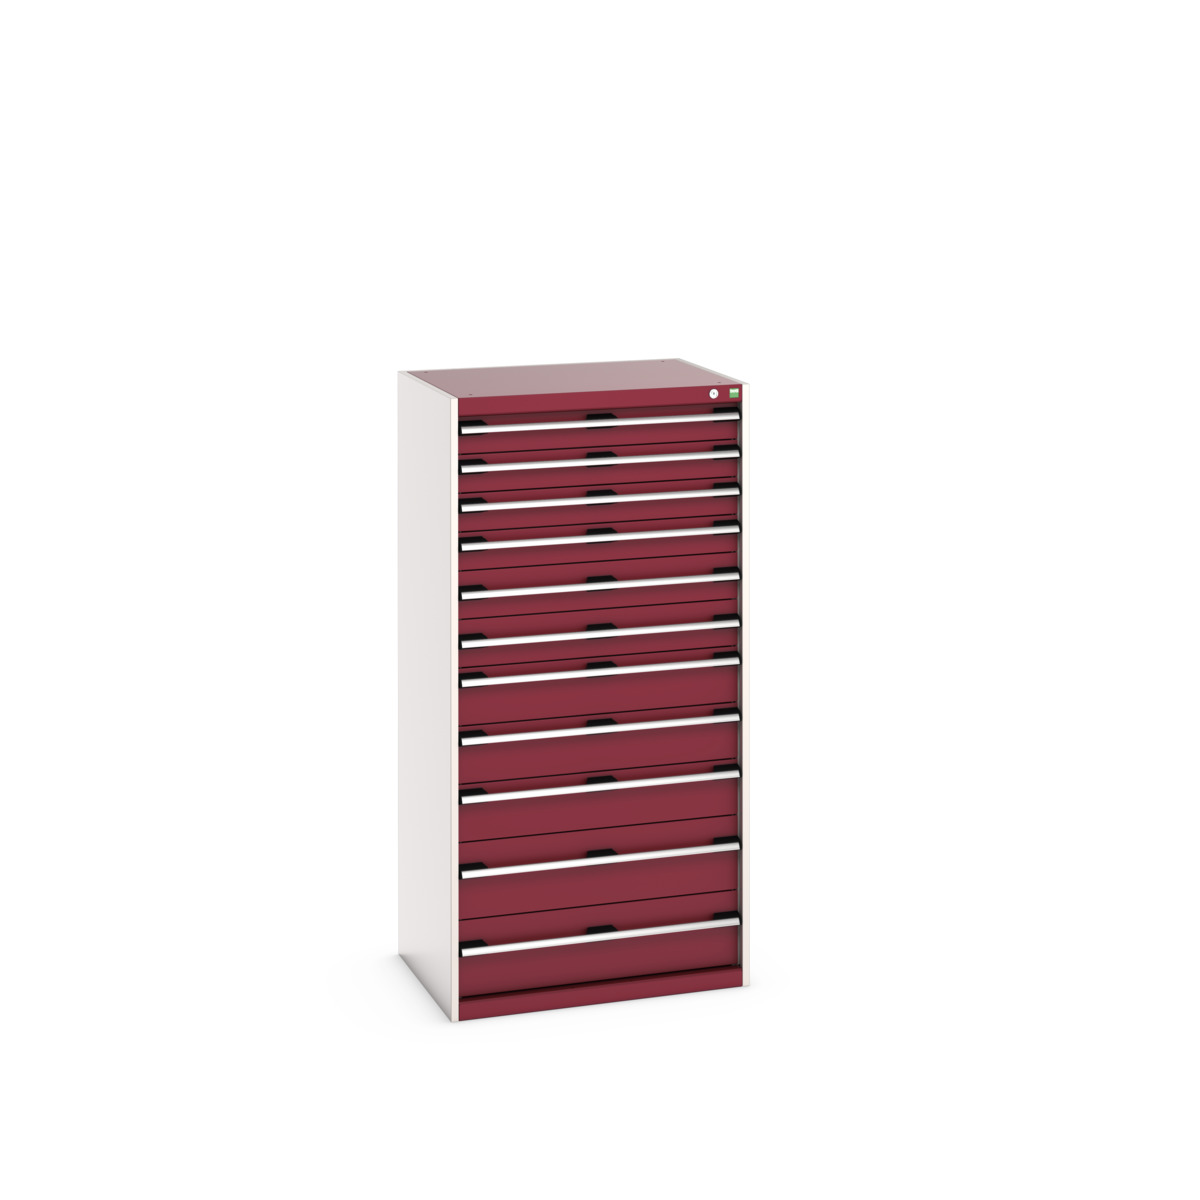 40020069.24V - cubio drawer cabinet